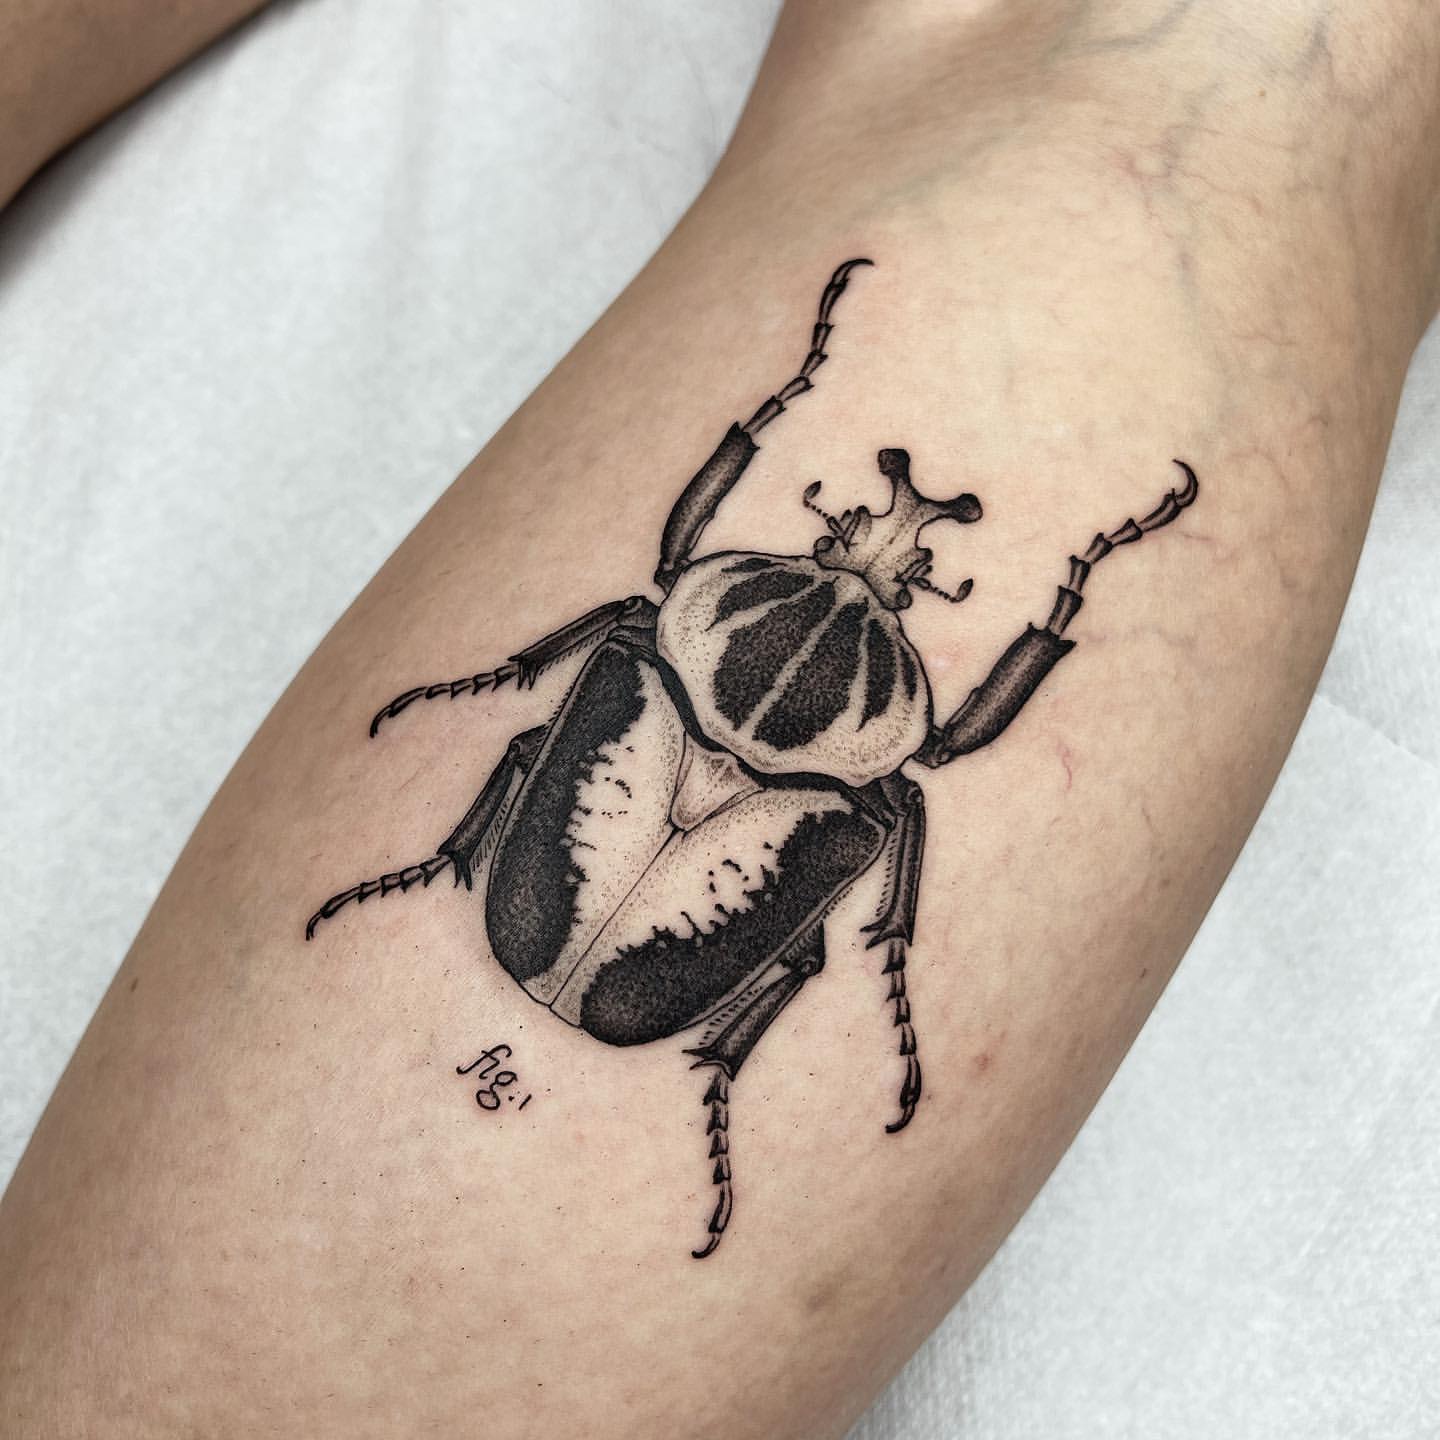 Scarab/Beetle Tattoo Ideas 12